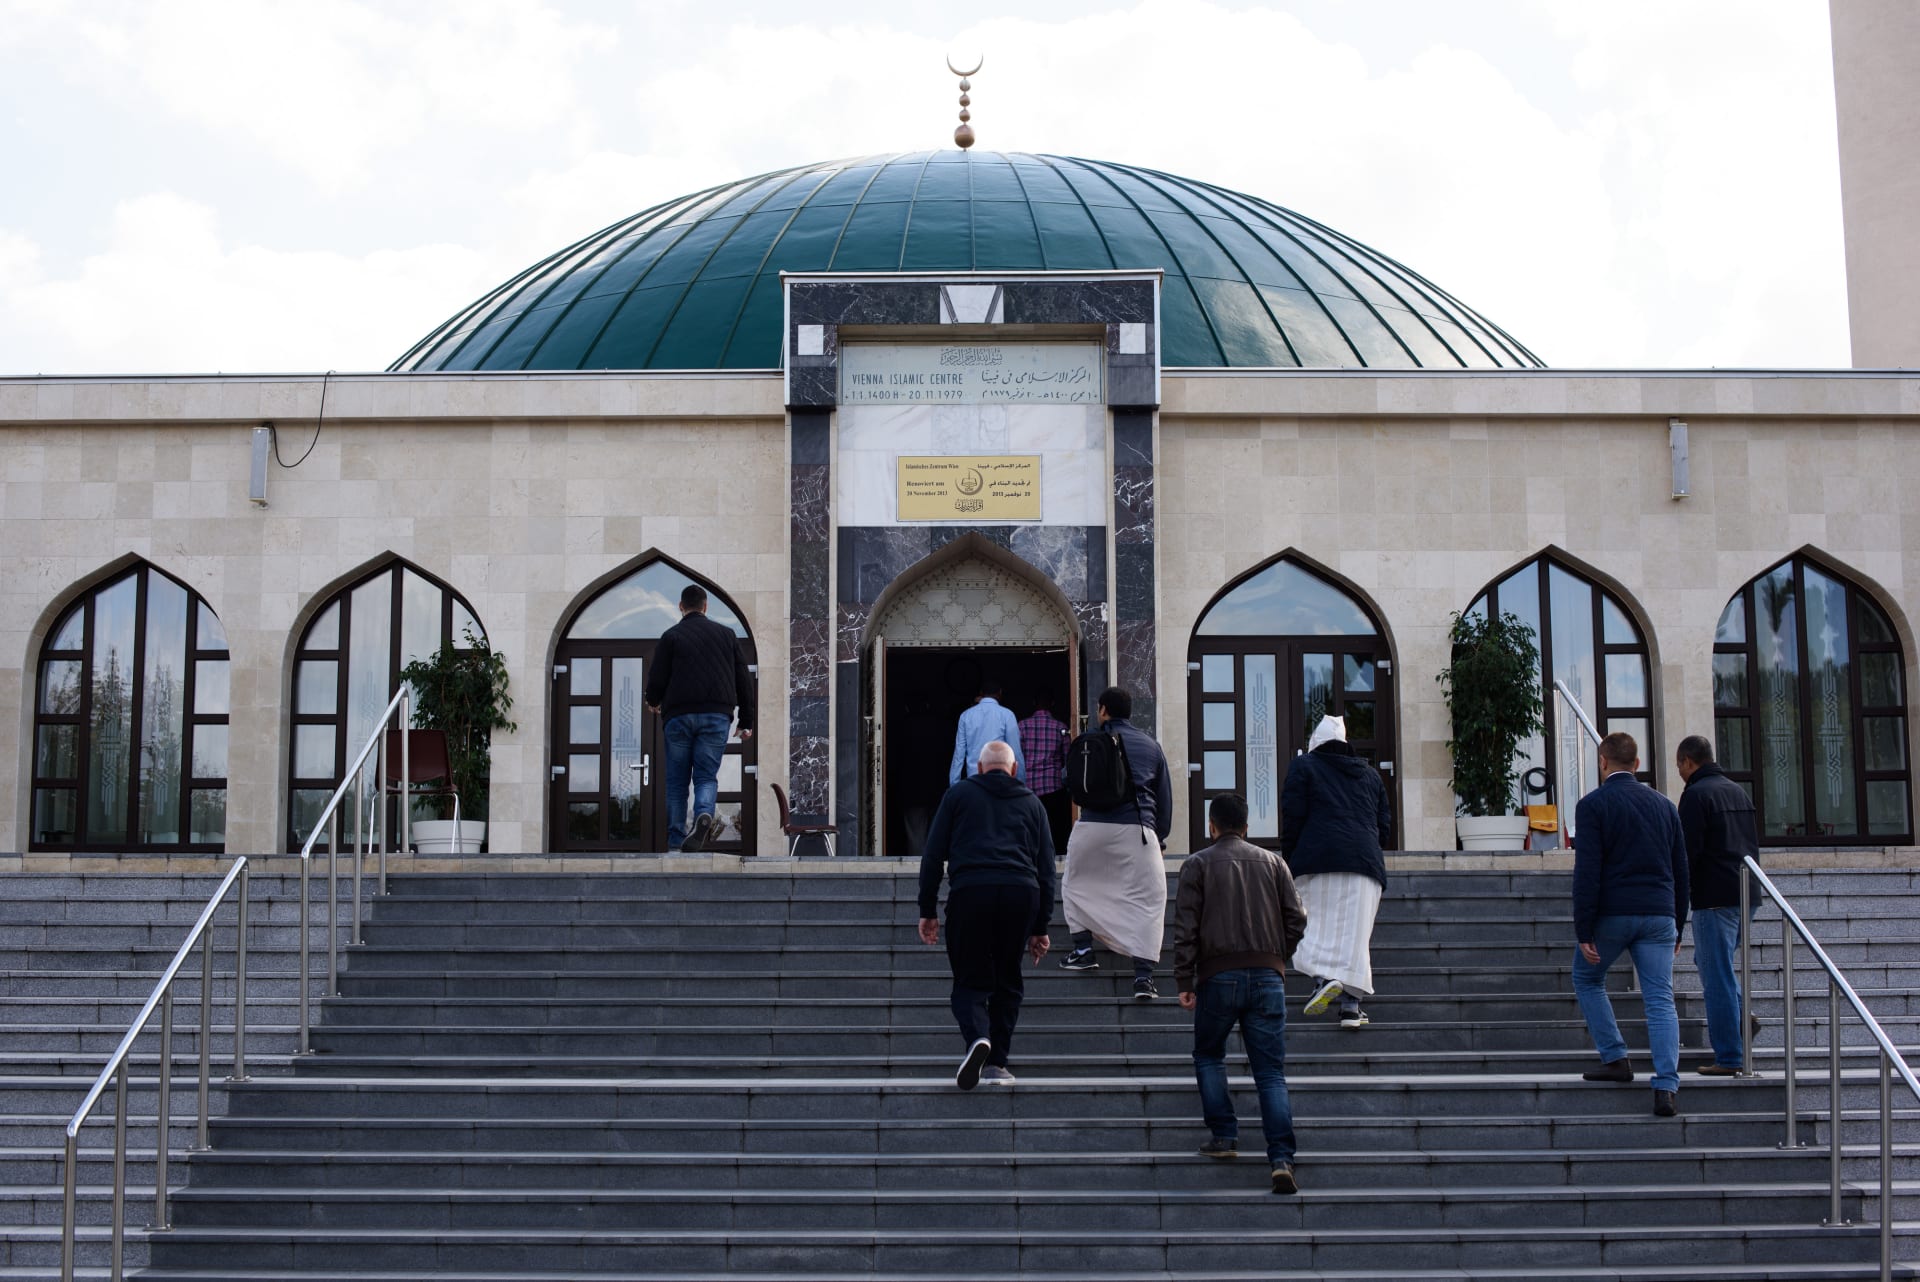 النمسا تعلن حملة ضد "الإسلام السياسي" وتغلق 7 مساجد